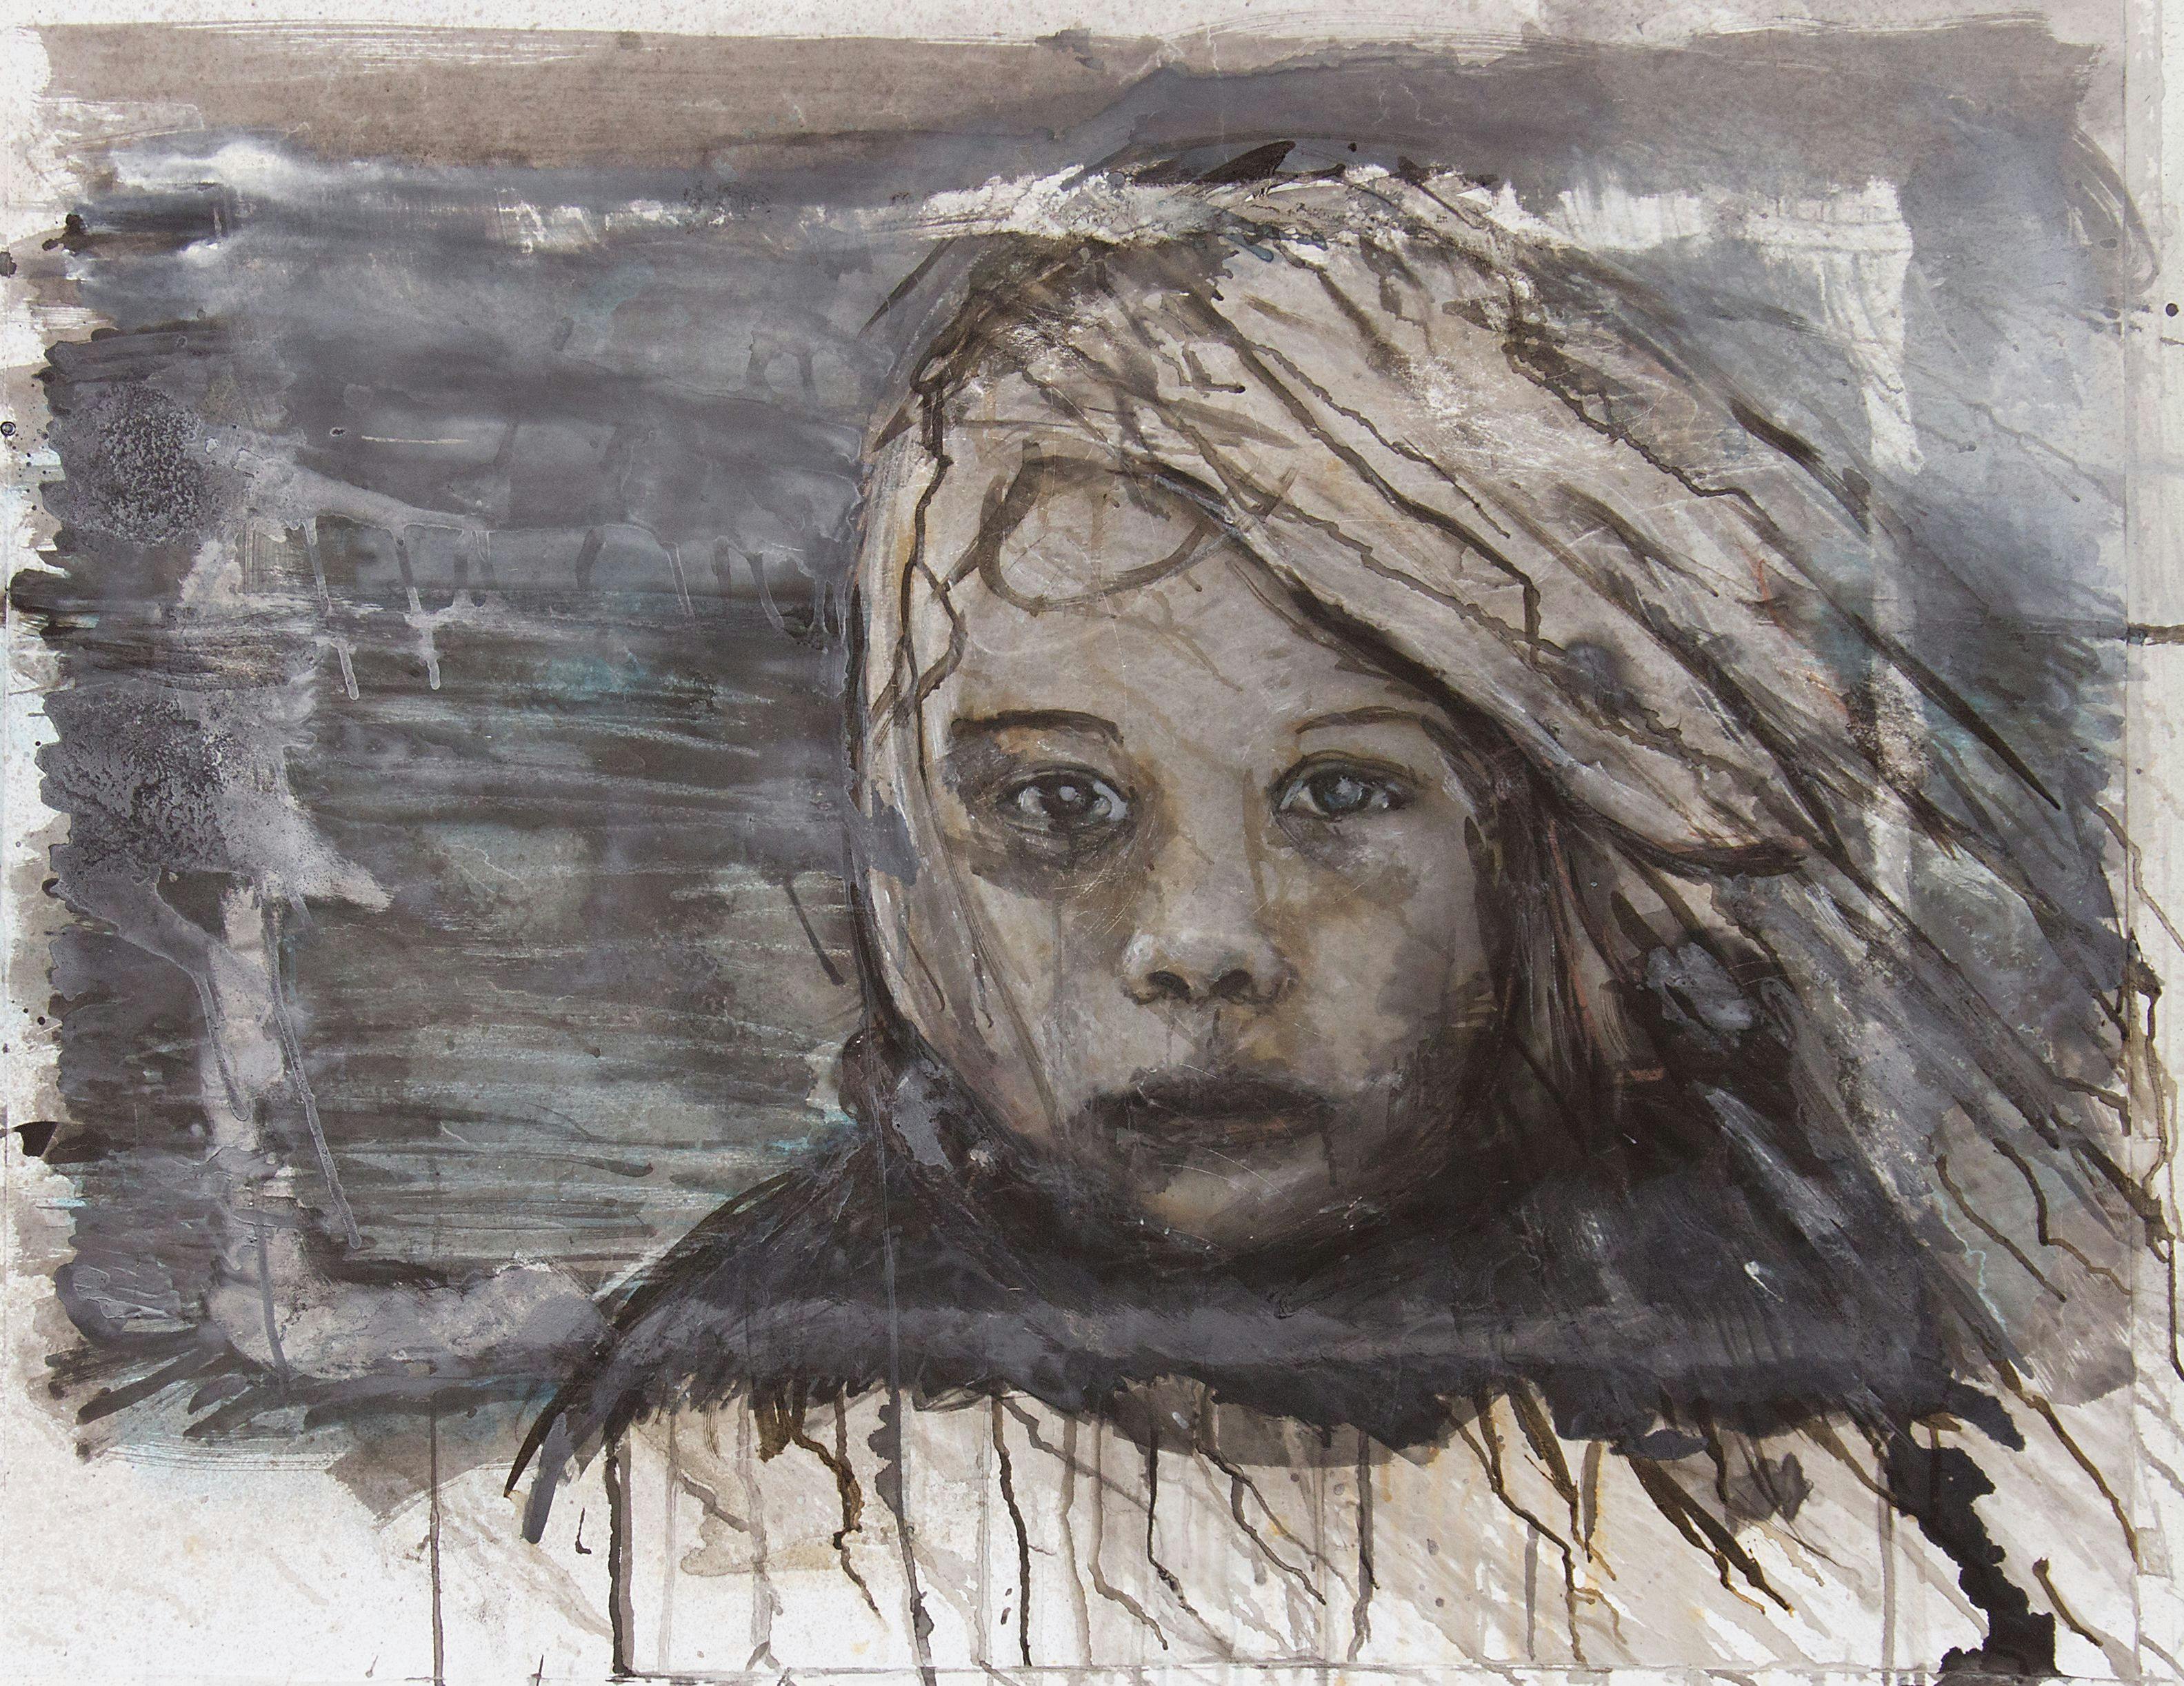 Svartvit akvarellmålning av Knutte Wester, föreställande ett barn med vind i håret som tittar på betraktaren.